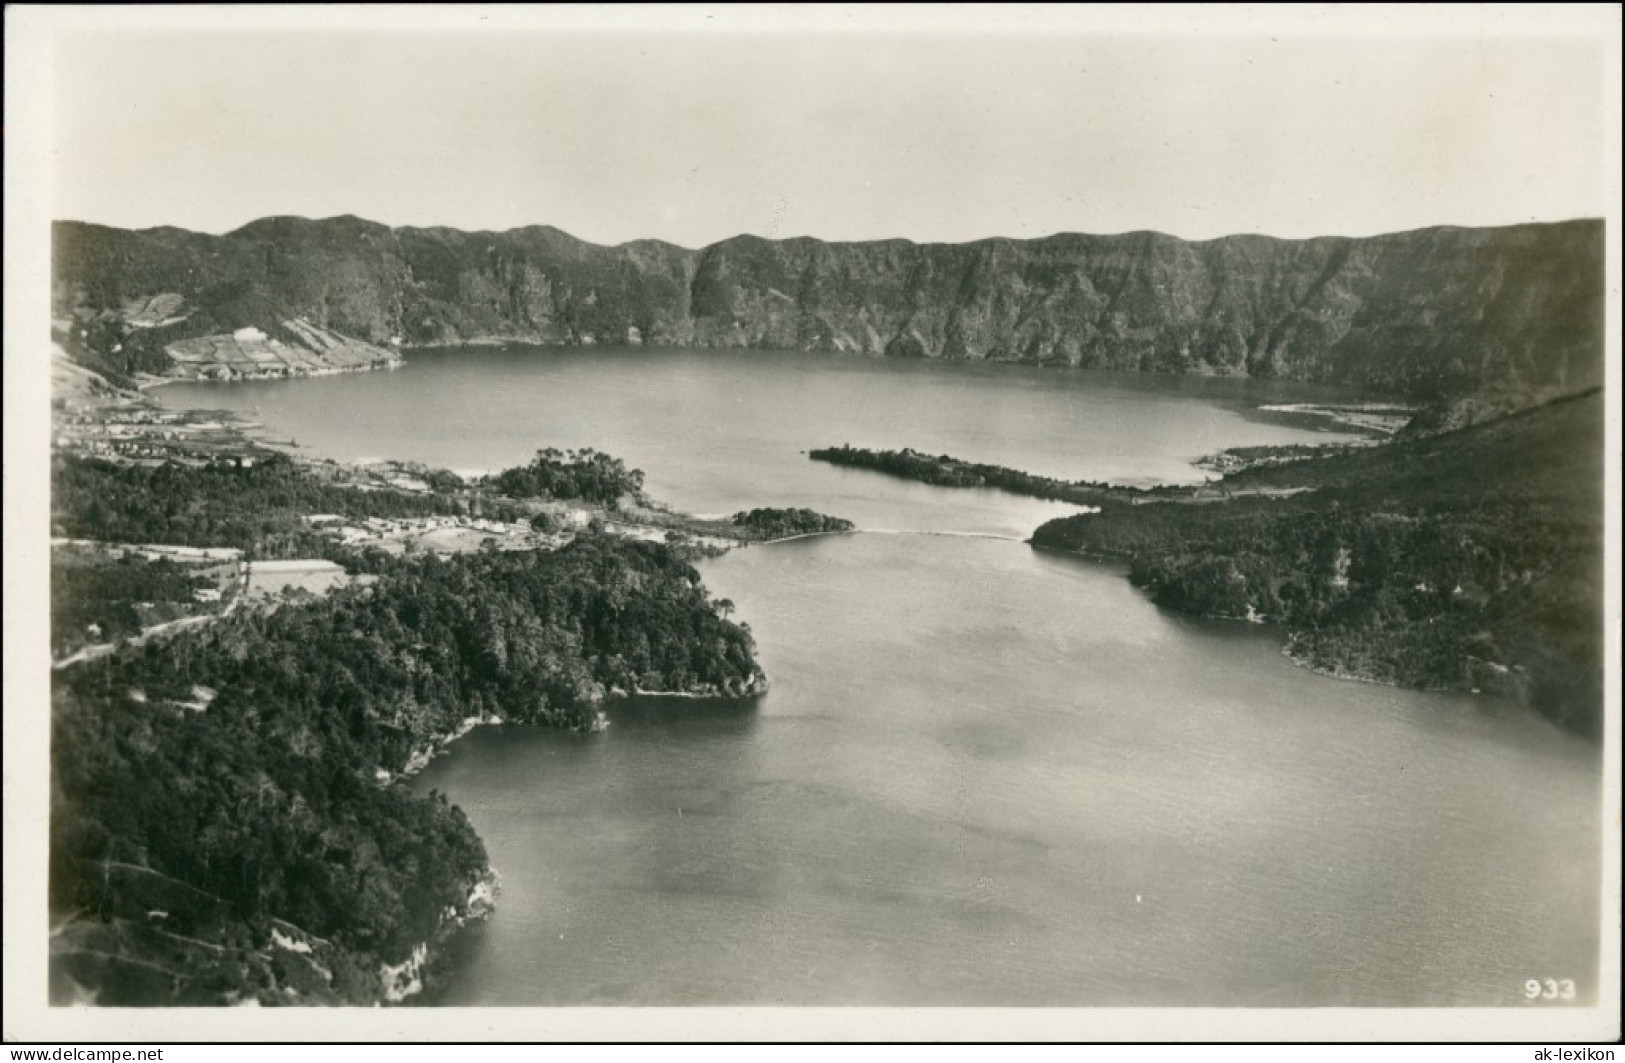 Sete Cidades São Miguel - Lago Cratera Das Sete Cidades  Sete Cidades 1935 - Altri & Non Classificati